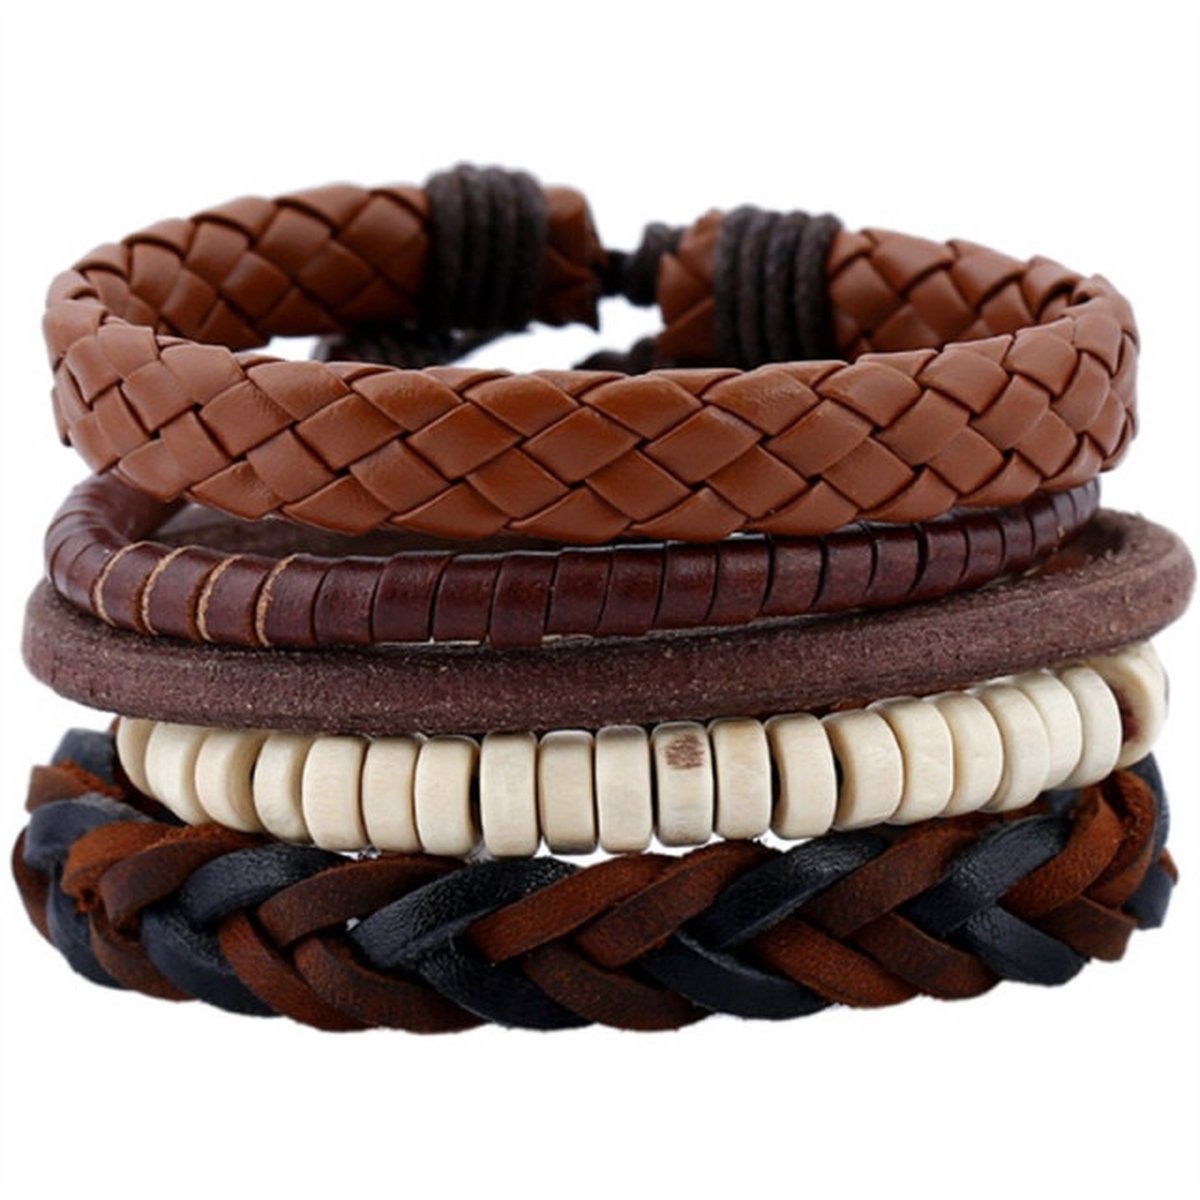 Leren armbanden set met houten kralen en touw | leren - natuurstenen - hout - kralen - geschenk | 20 - 25 cm flexibel Valentijns cadeau